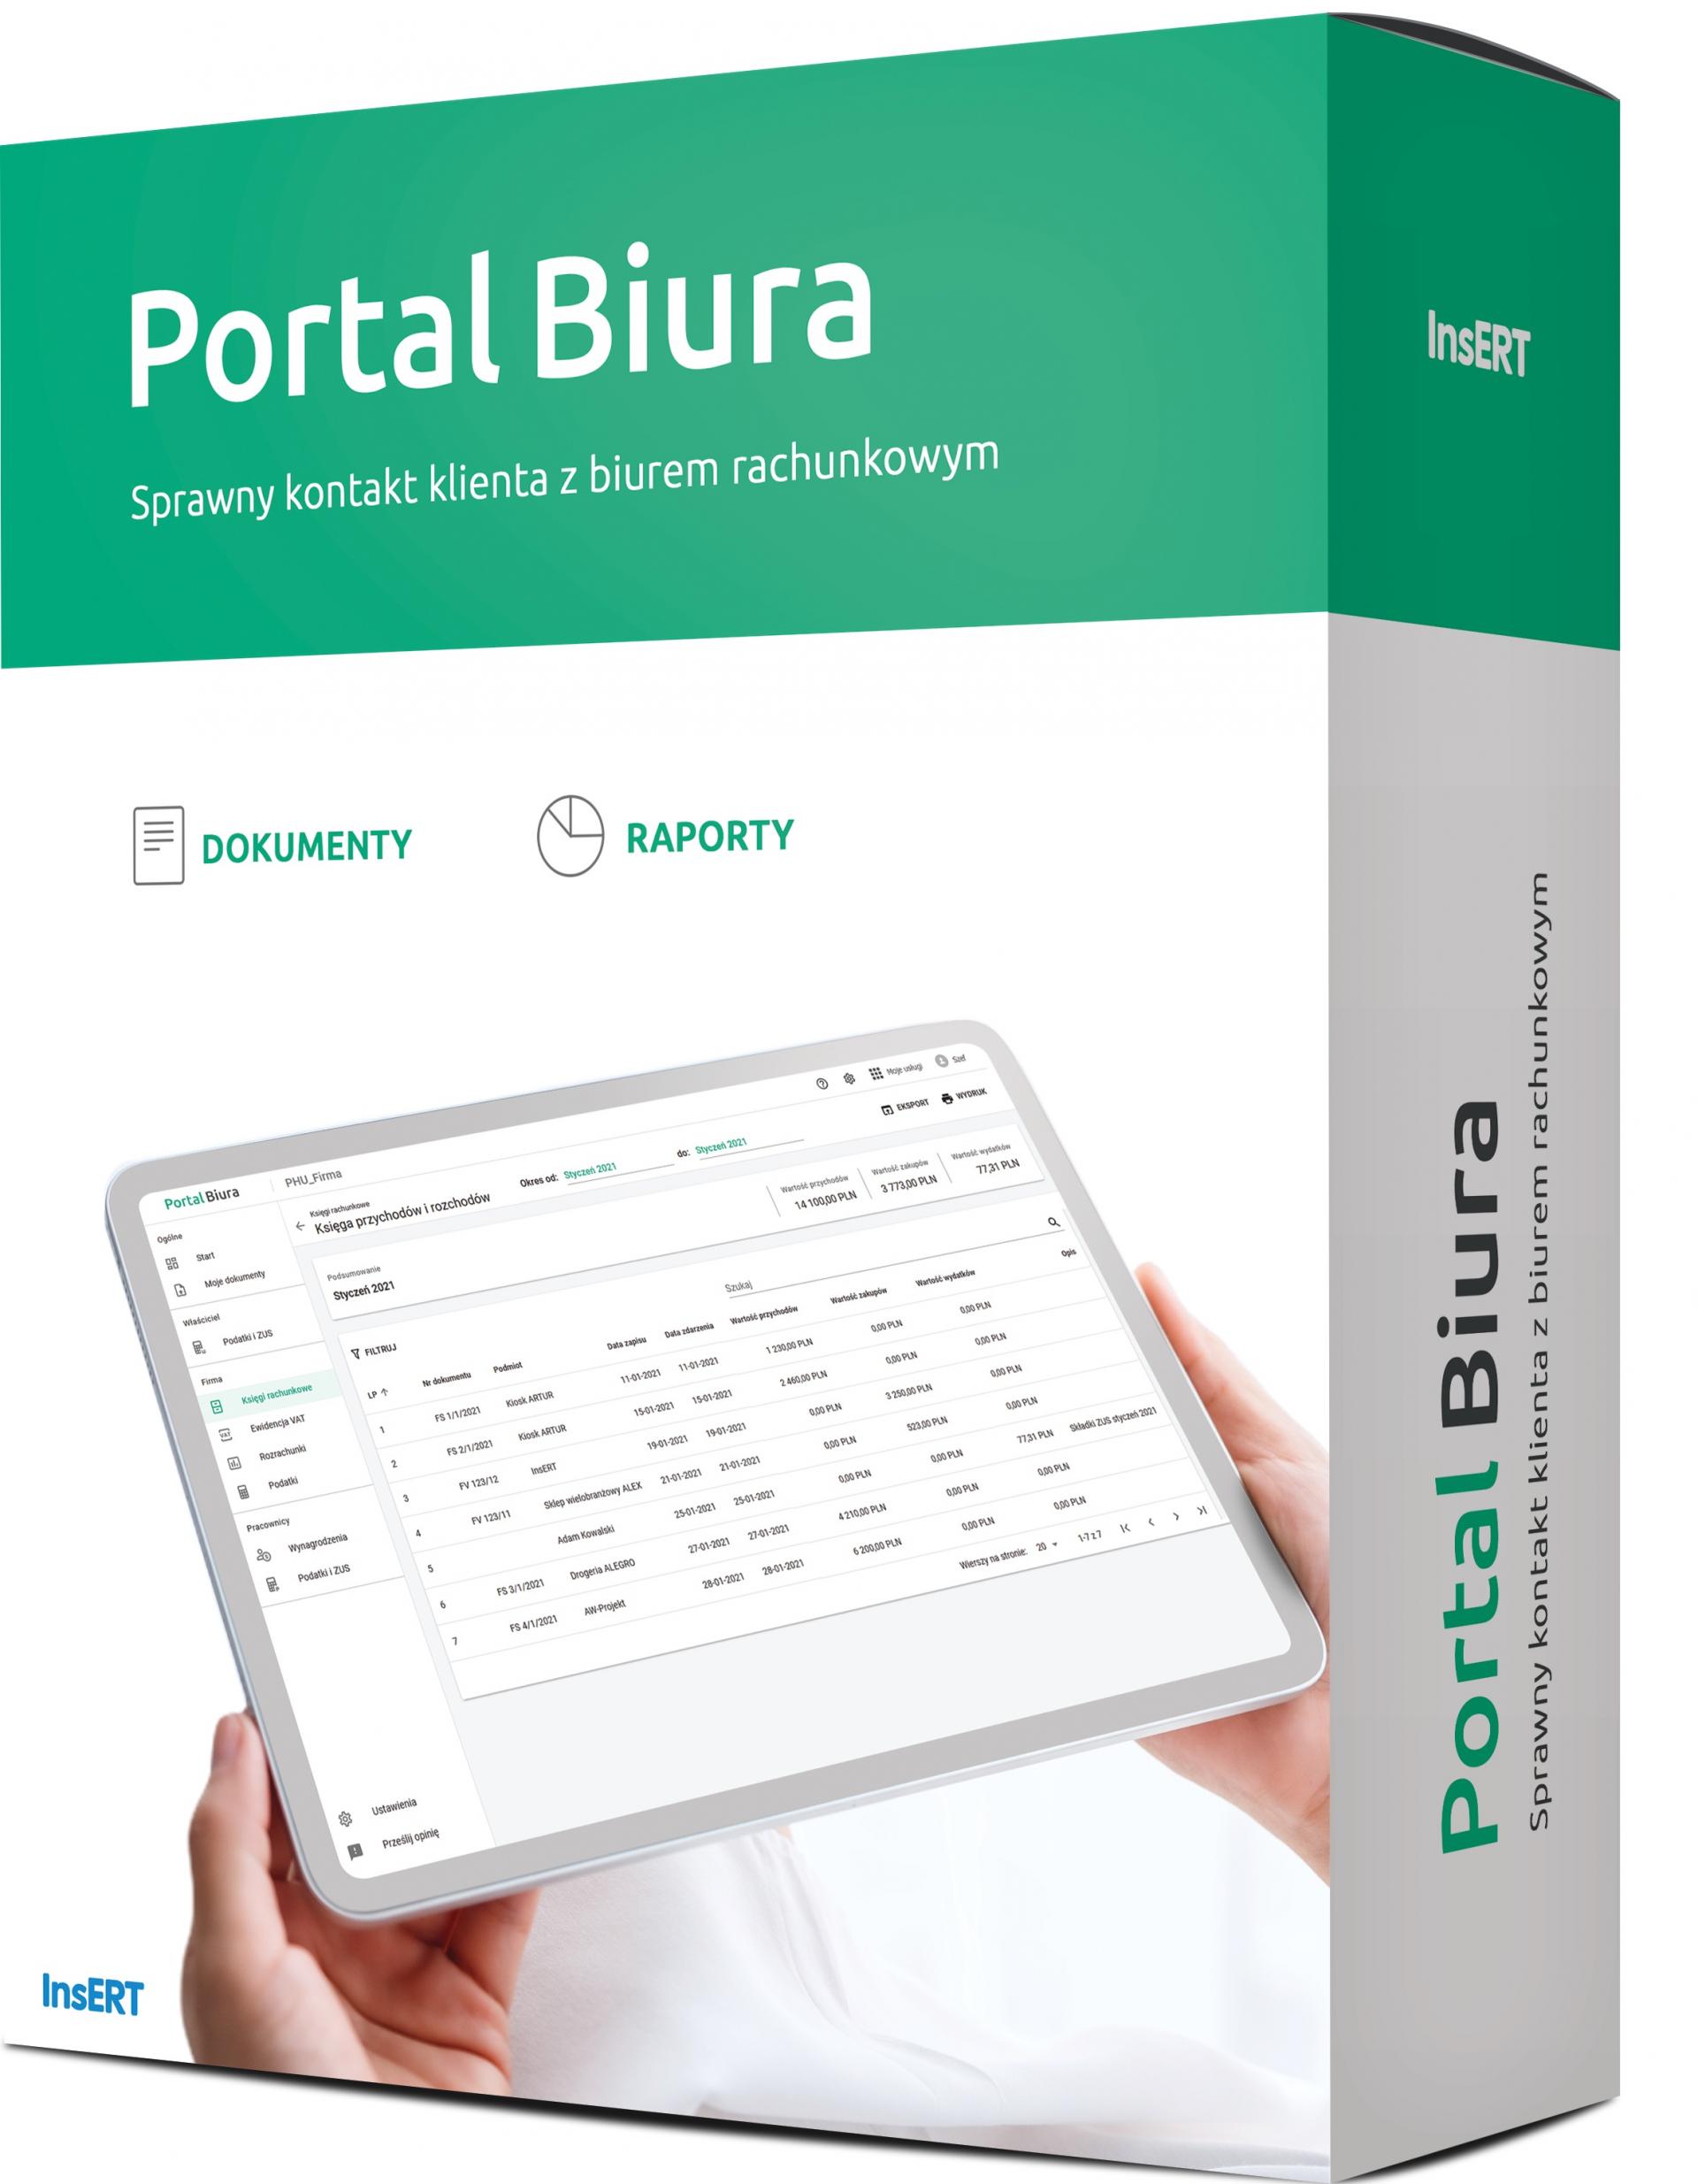 Pudełko programu Portal Biura